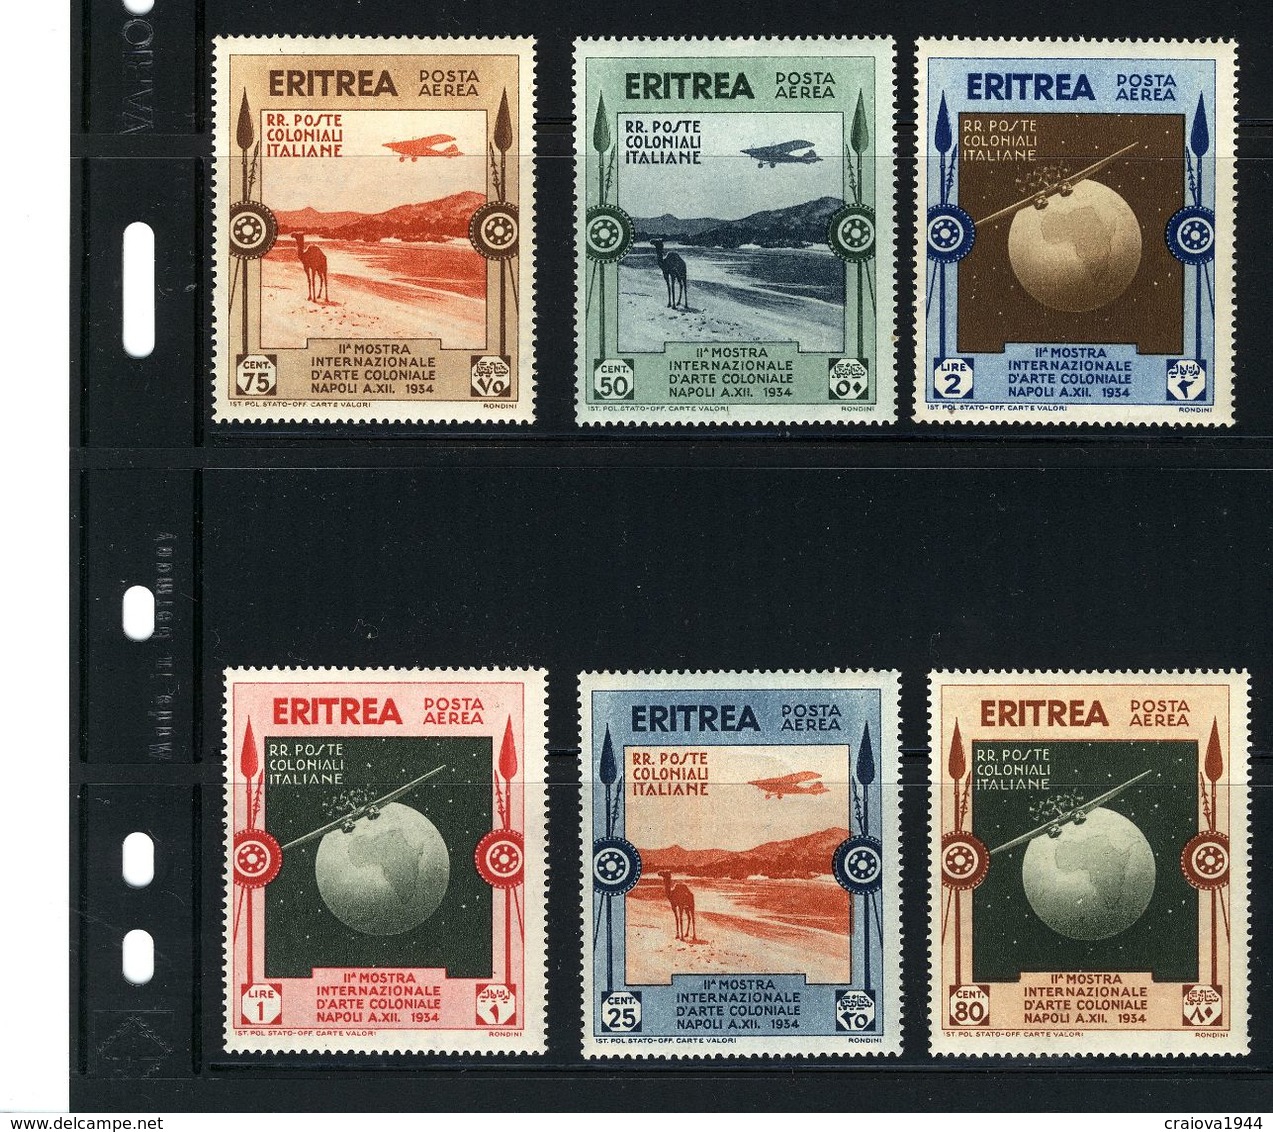 ERITREA 1934 "EXPO. INTERNAZIONALE, D'ARTE COLONIALE NAPOLI #C1 - C6 MH  $33.00 - Eritrea